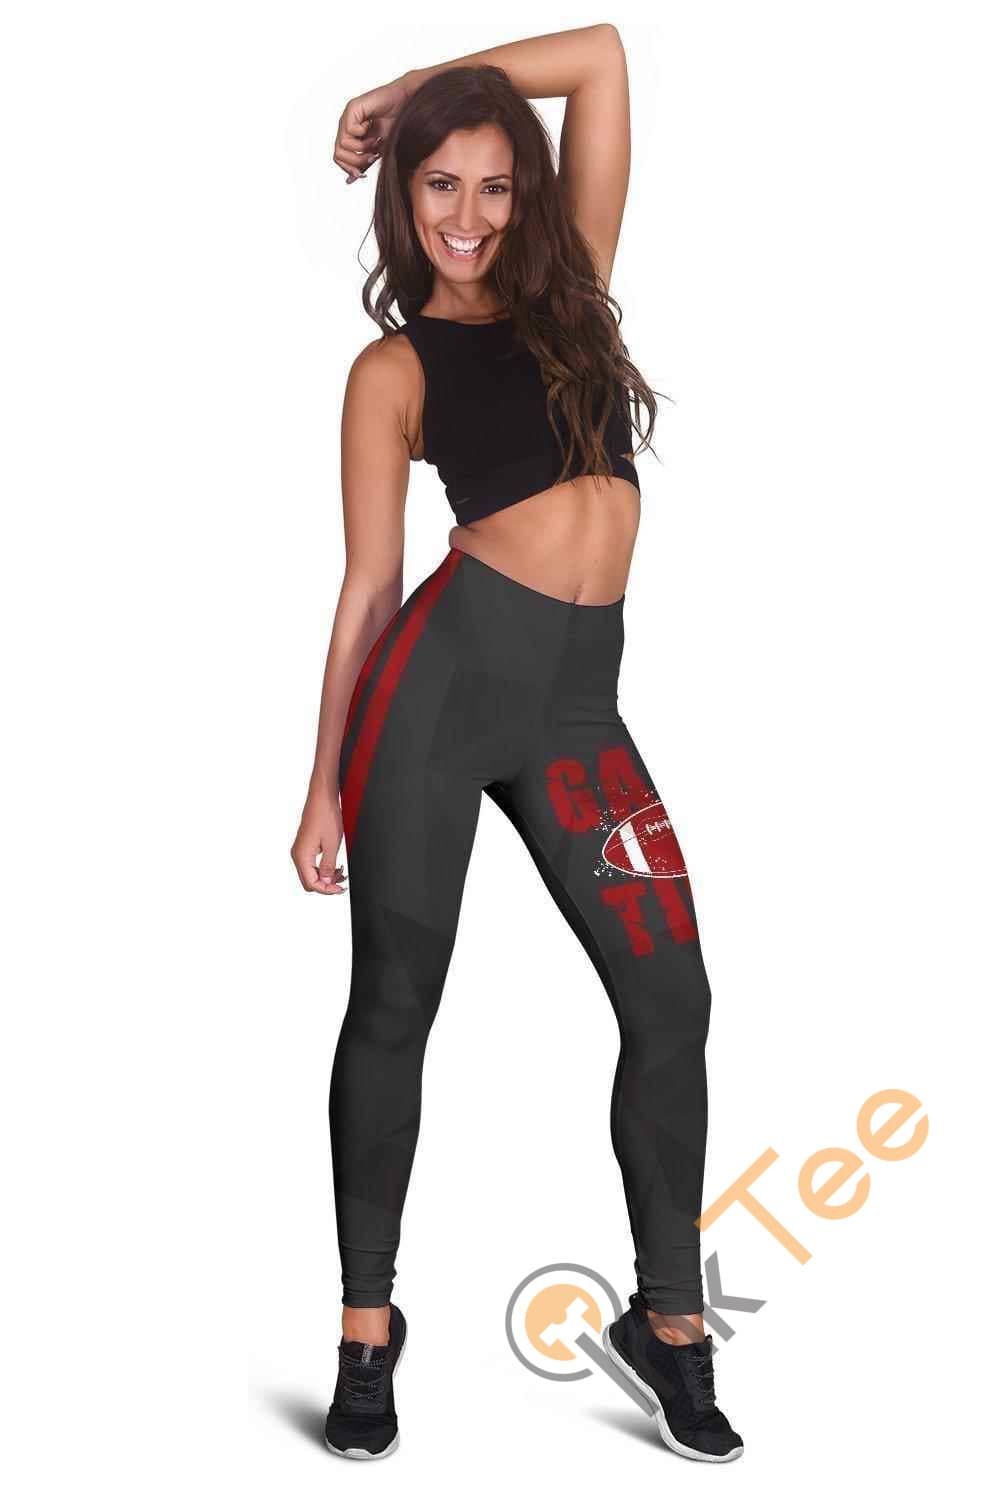 Inktee Store - Love Football 3D All Over Print For Yoga Fitness Women'S Leggings Image